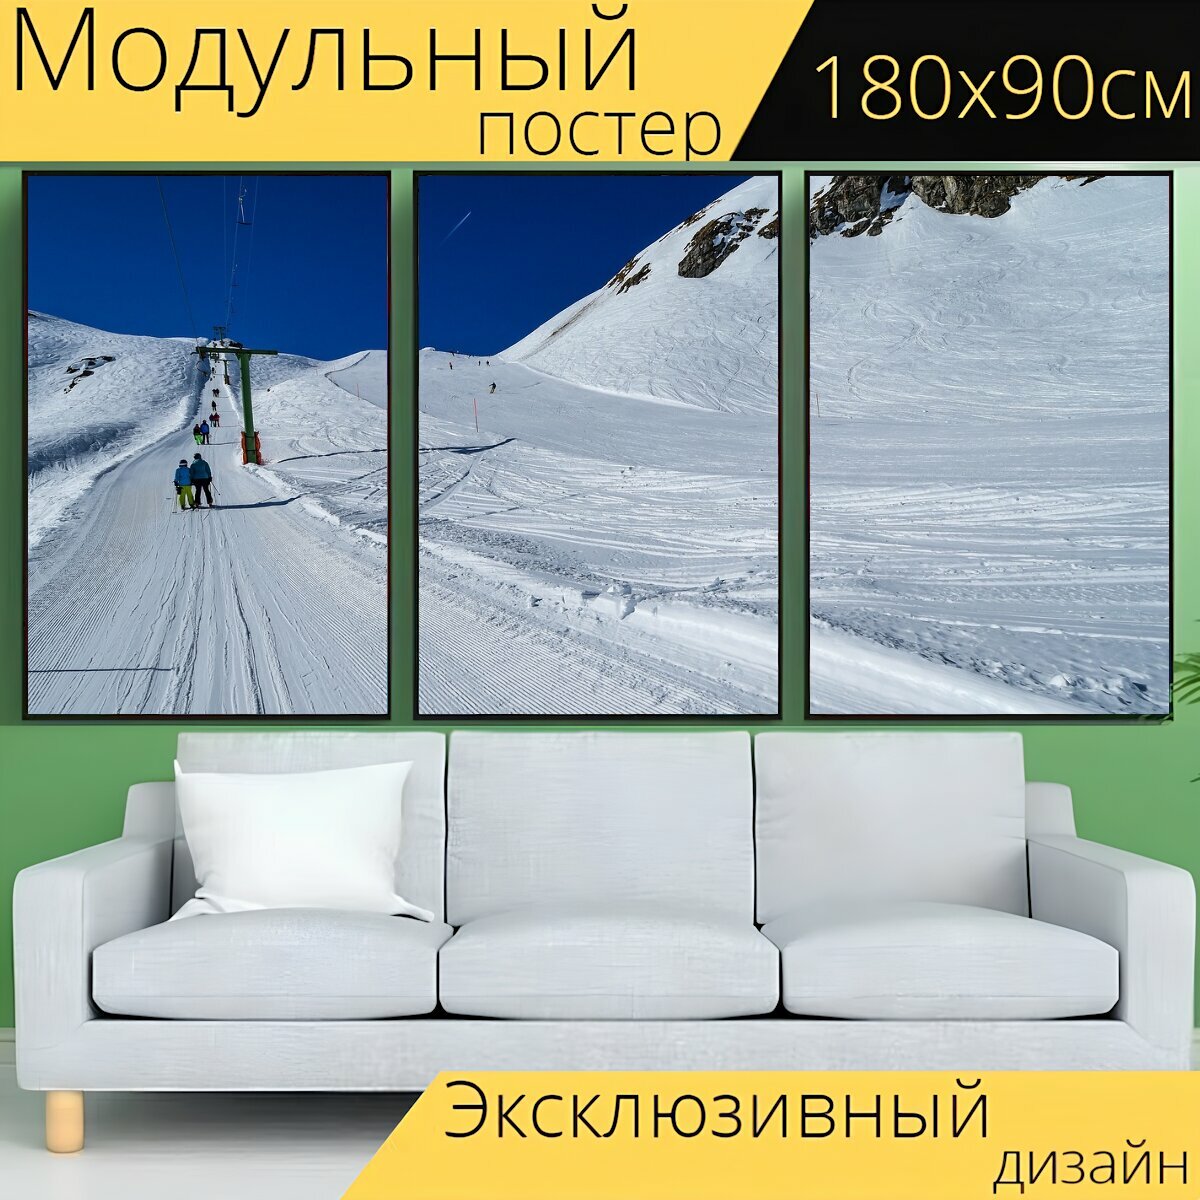 Модульный постер "Снег, кататься на лыжах, горнолыжный подъемник" 180 x 90 см. для интерьера